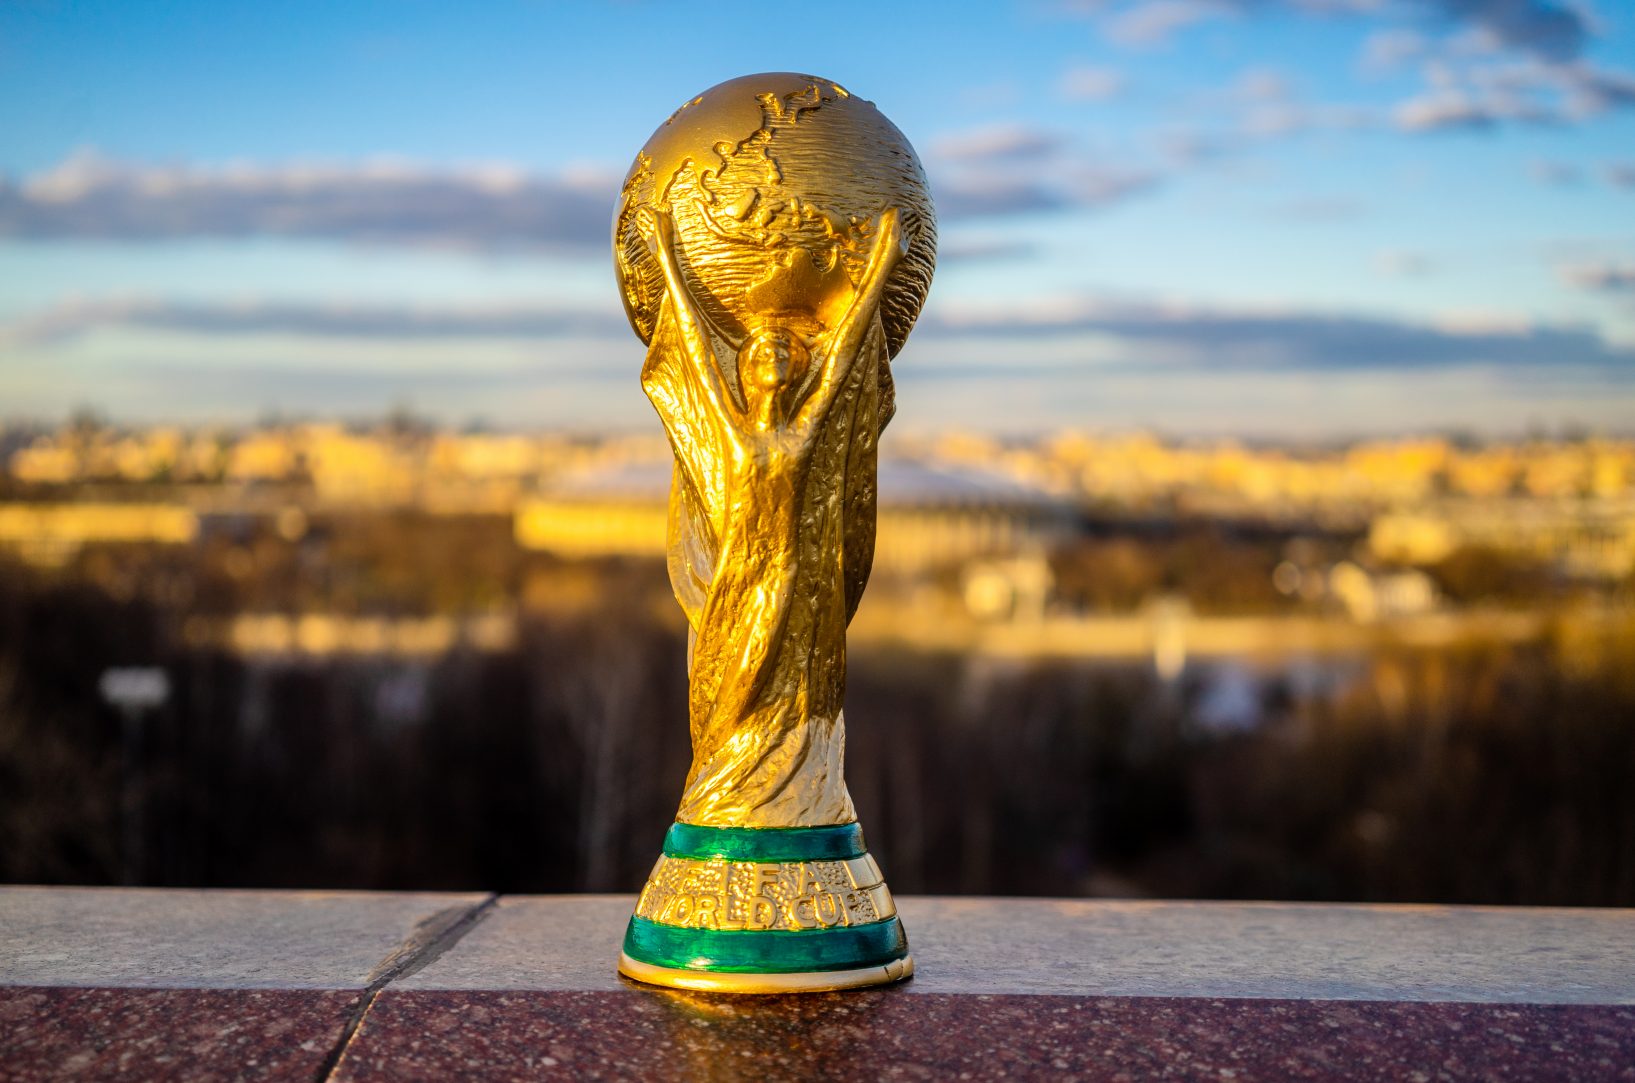 Coupe du Monde 2030 l'Espagne, le Portugal, l'Ukraine et le Maroc